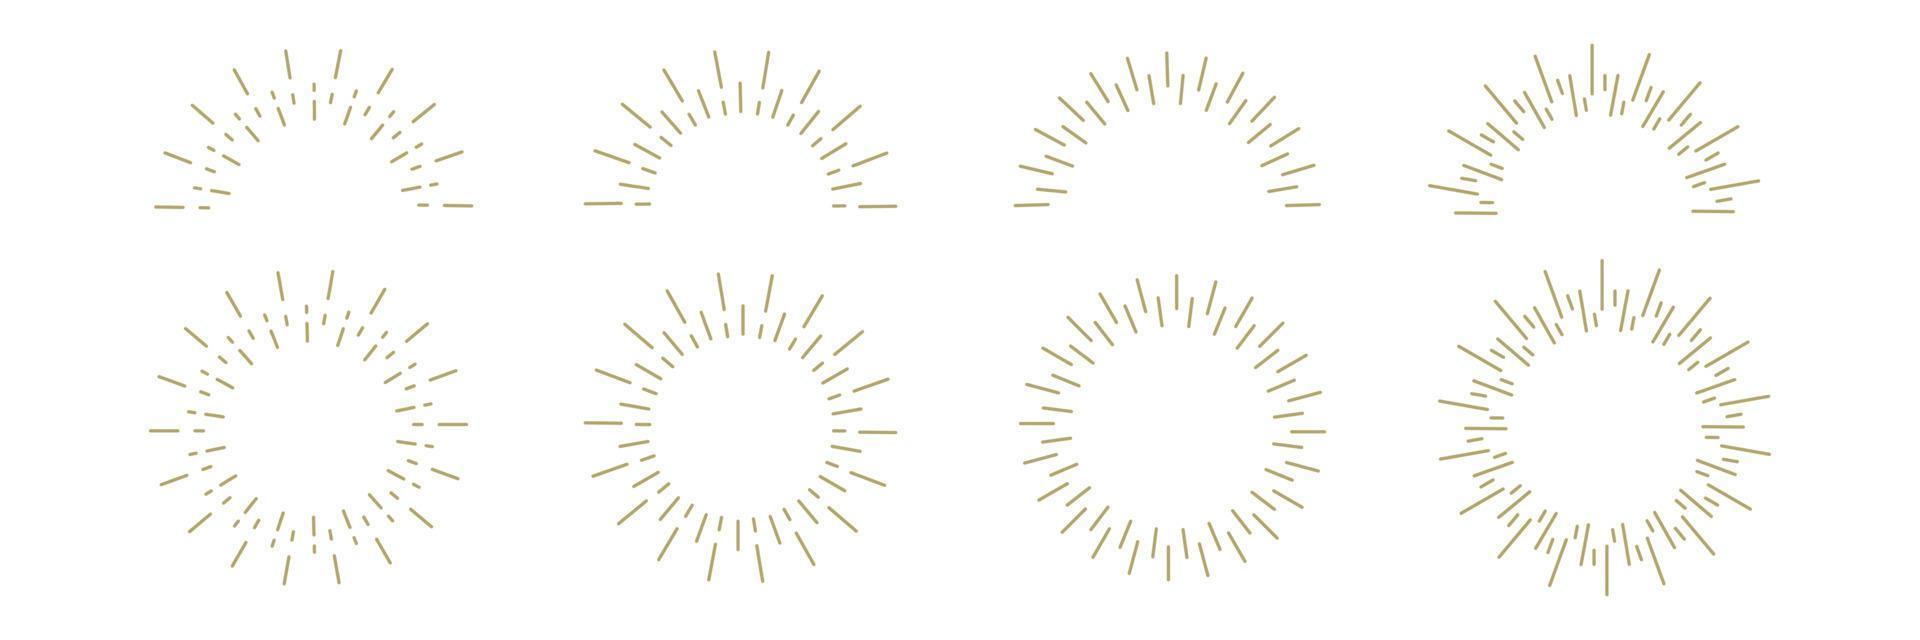 emblema de explosão solar. conjunto de ícones de linha de raios estourando. conceito de nascer e pôr do sol. estilo moderno. ilustração vetorial vetor